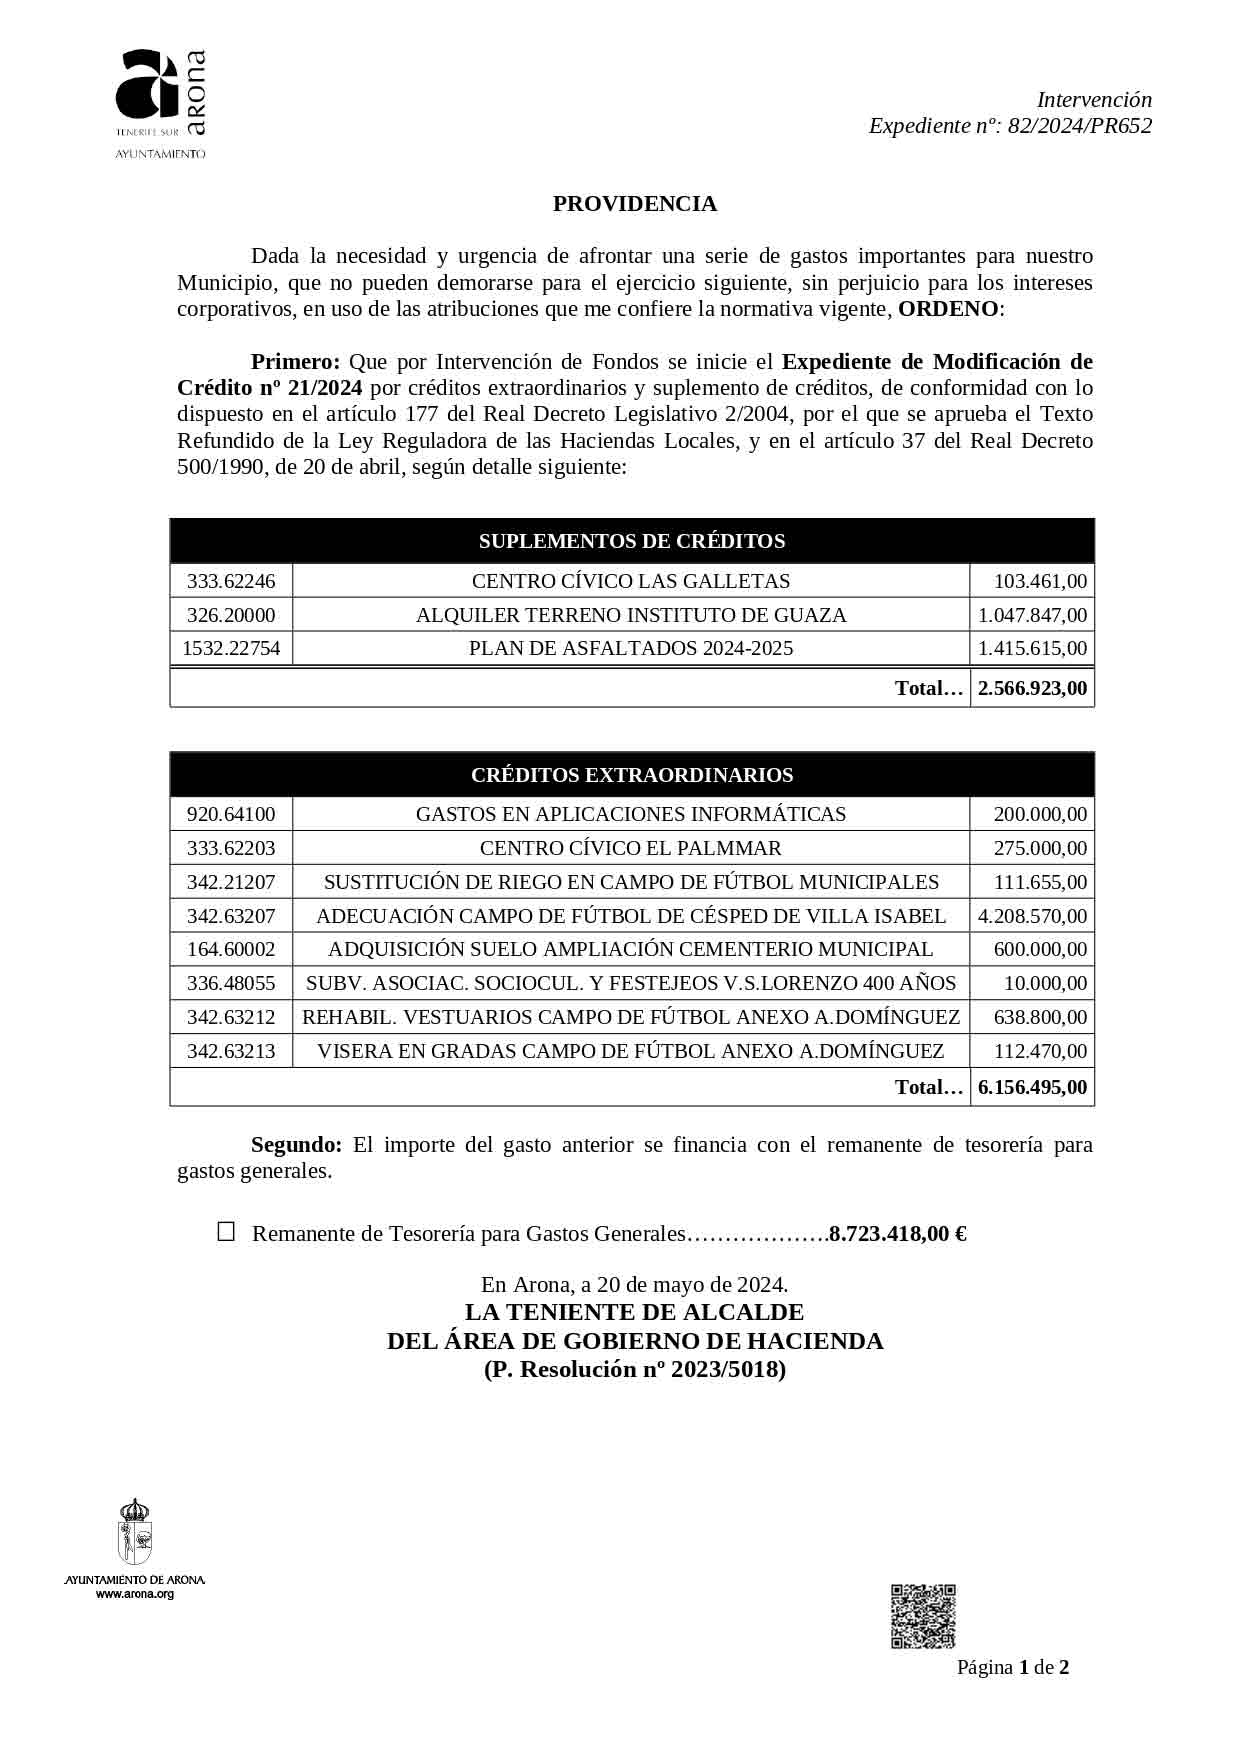 Documento que acredita la modificación del presupuesto en el ayuntamiento de Arona, copiado los proyectos del partido socialista (PSOE)